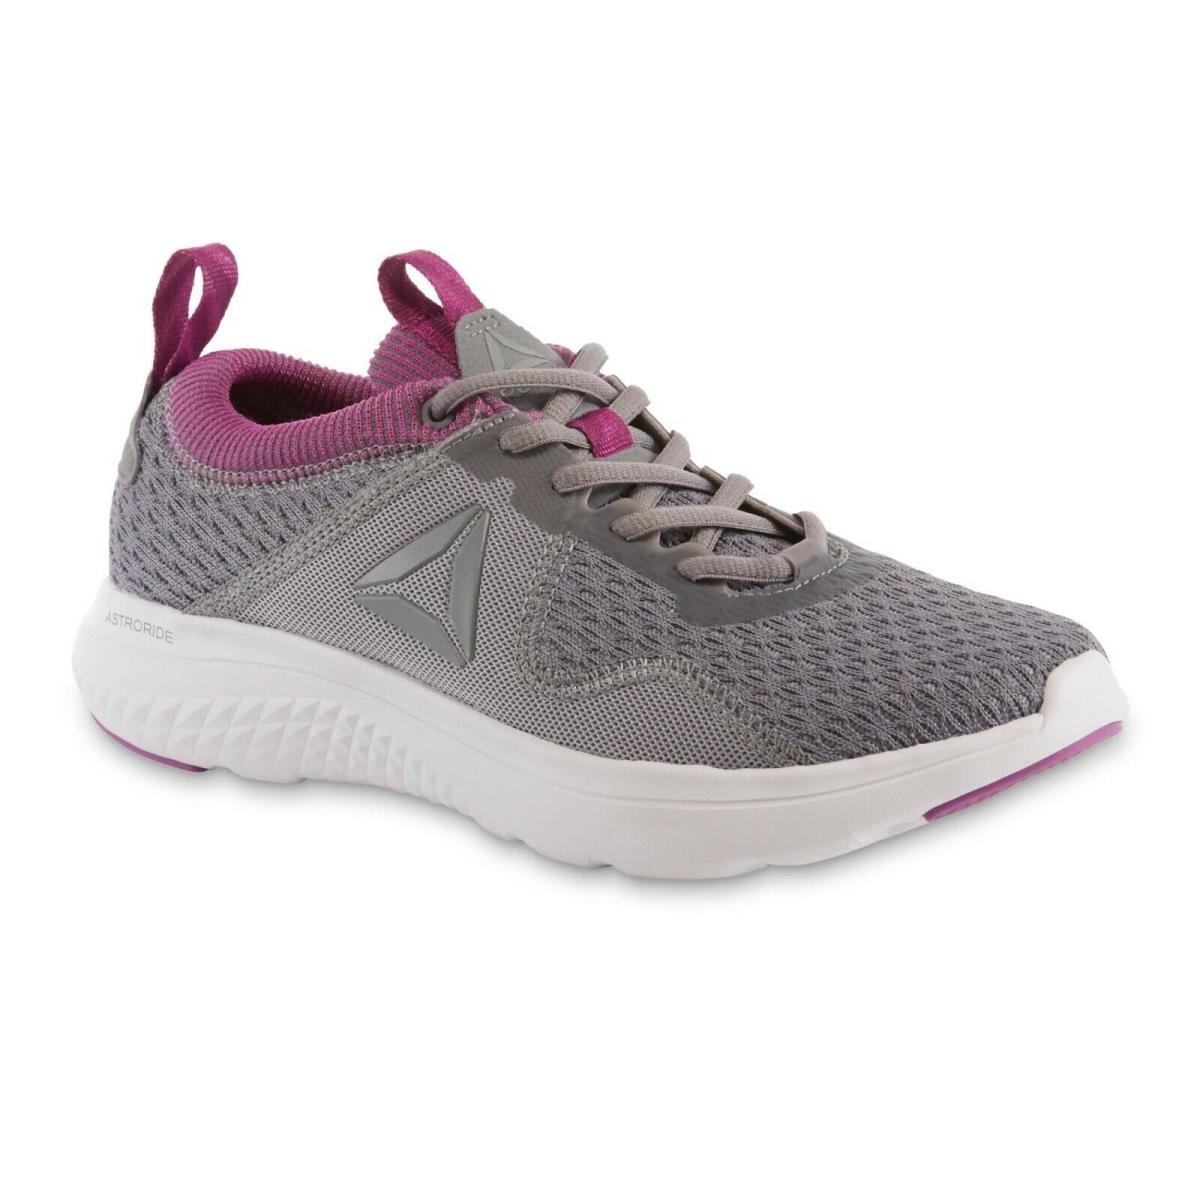 Reebok Ladies Running Tennis Shoe Grey Size 6 1/2 Med